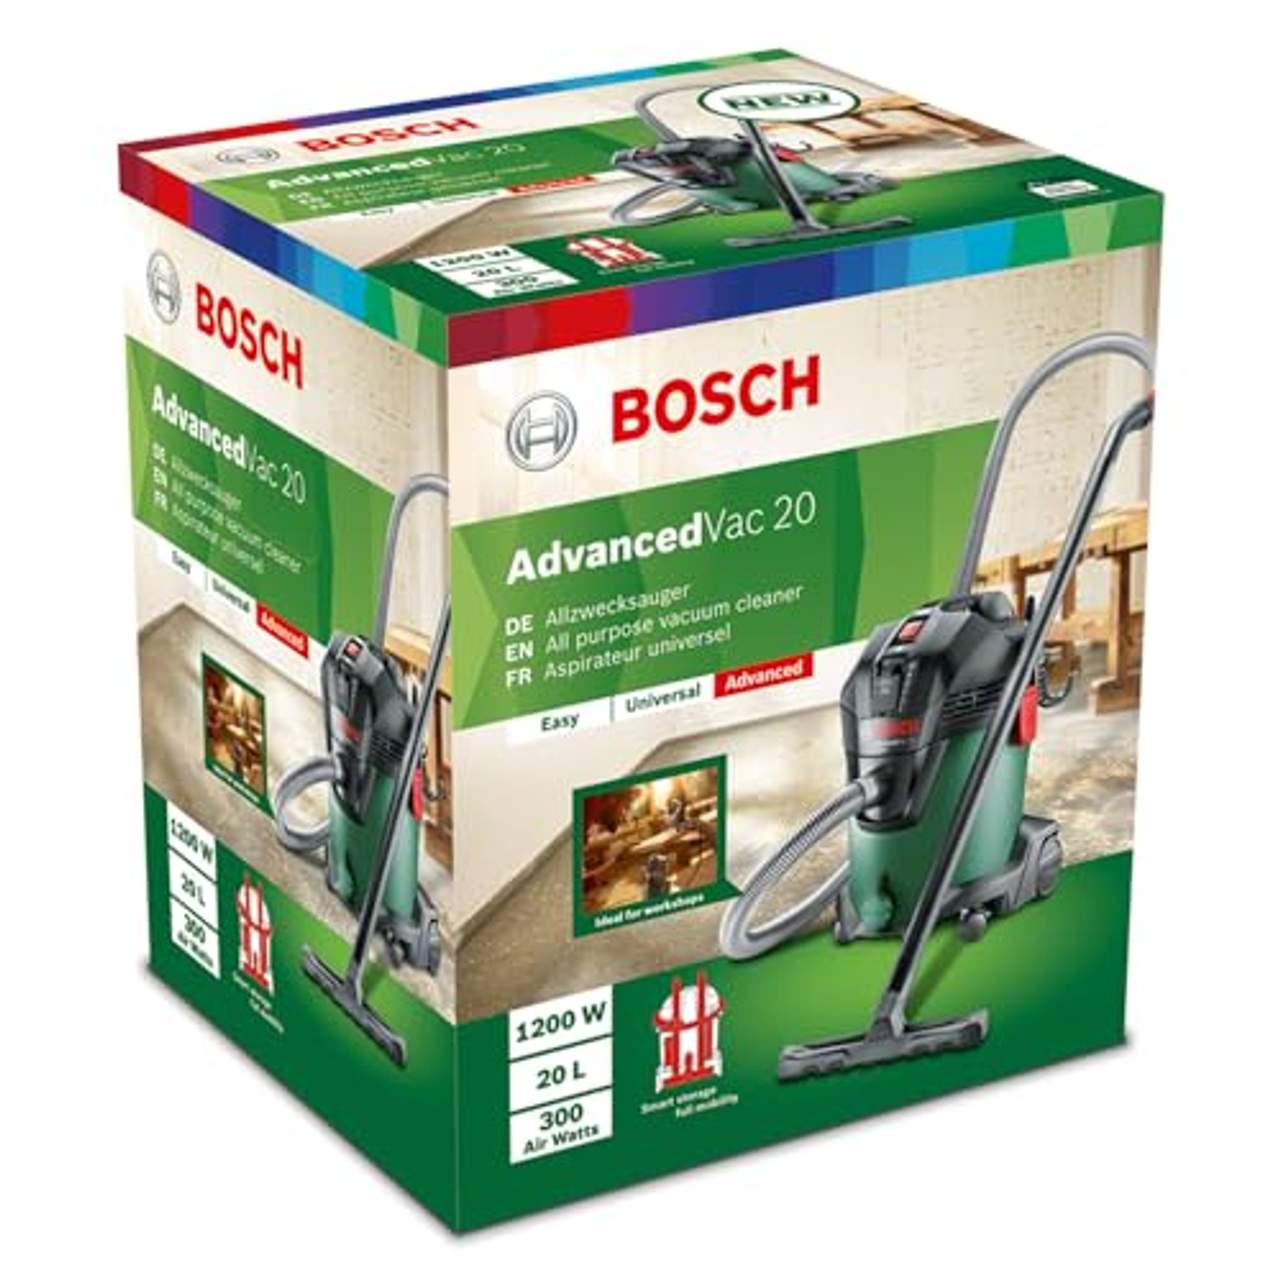 Bosch Nass- und Trockensauger AdvancedVac 20